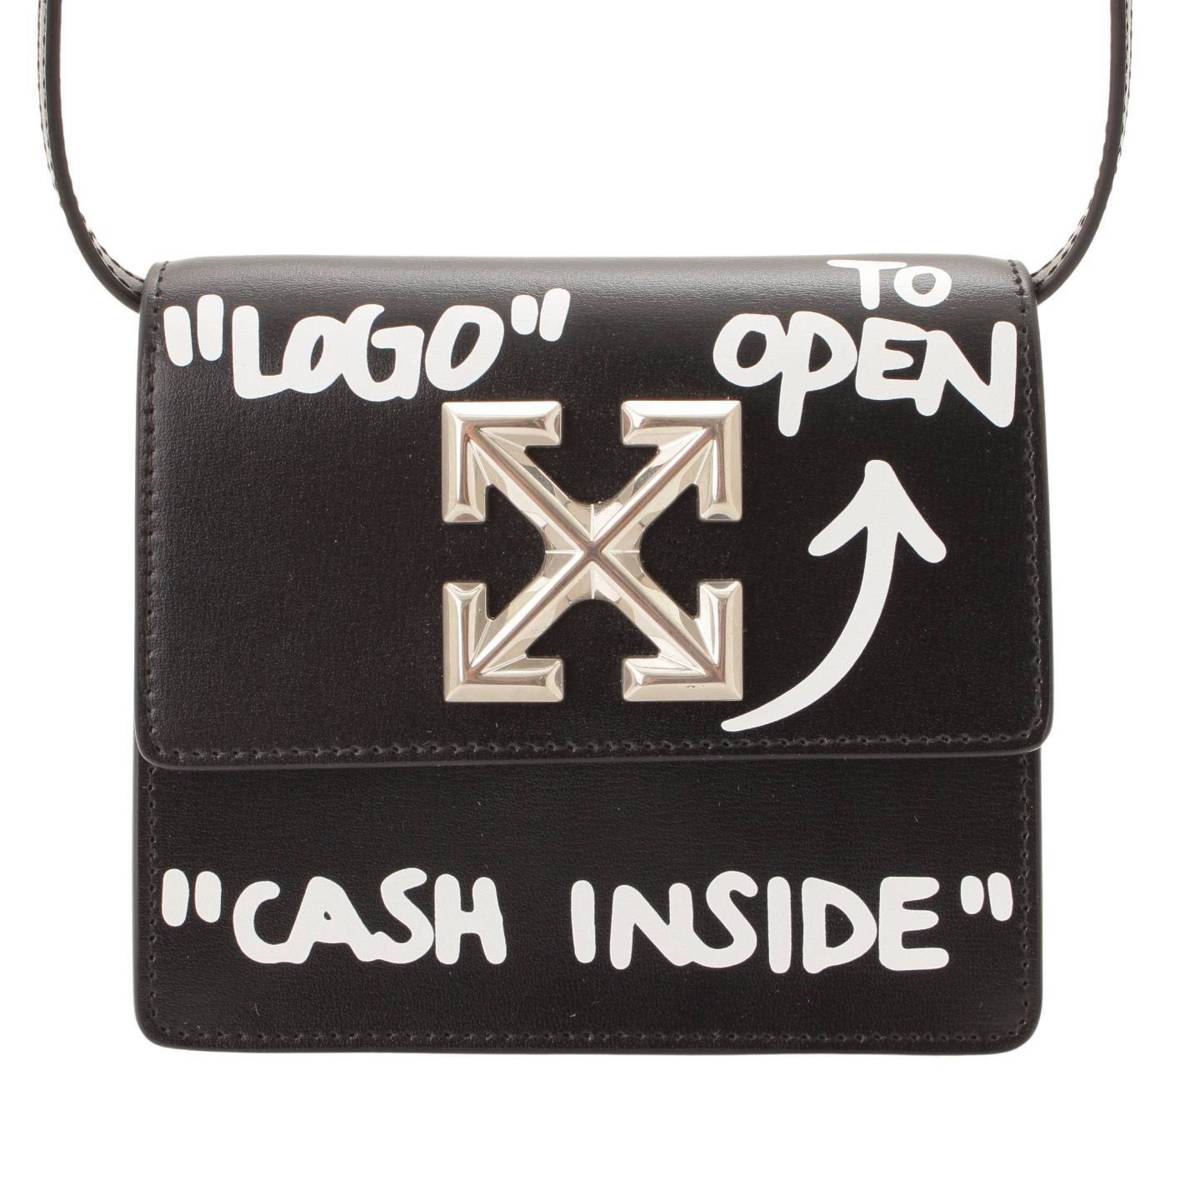 オフホワイト(Off-White) Jitney 0.7 Cash Inside Bag ミニショルダー